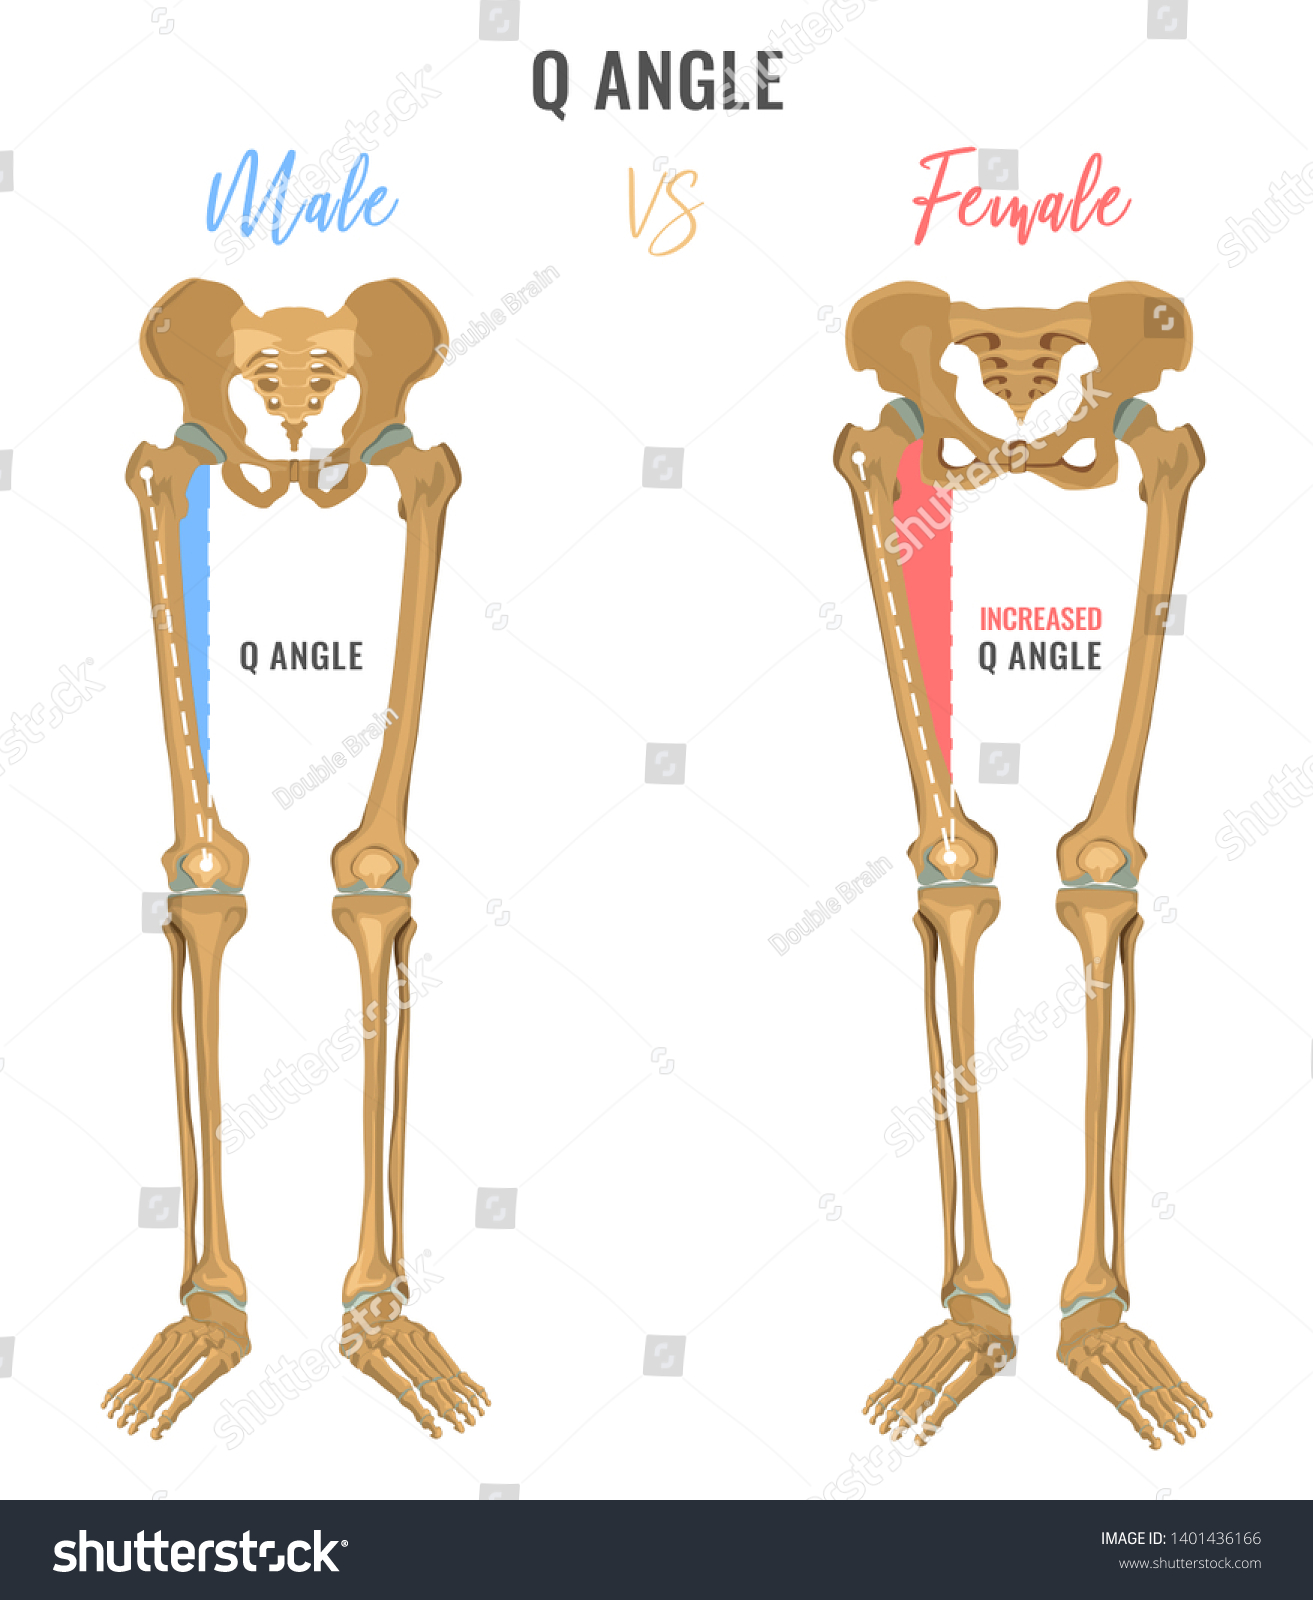 男女の骨格の違いのポスター 比較のq角度 主な性別のニュアンス 白い背景に美しいイラスト のイラスト素材